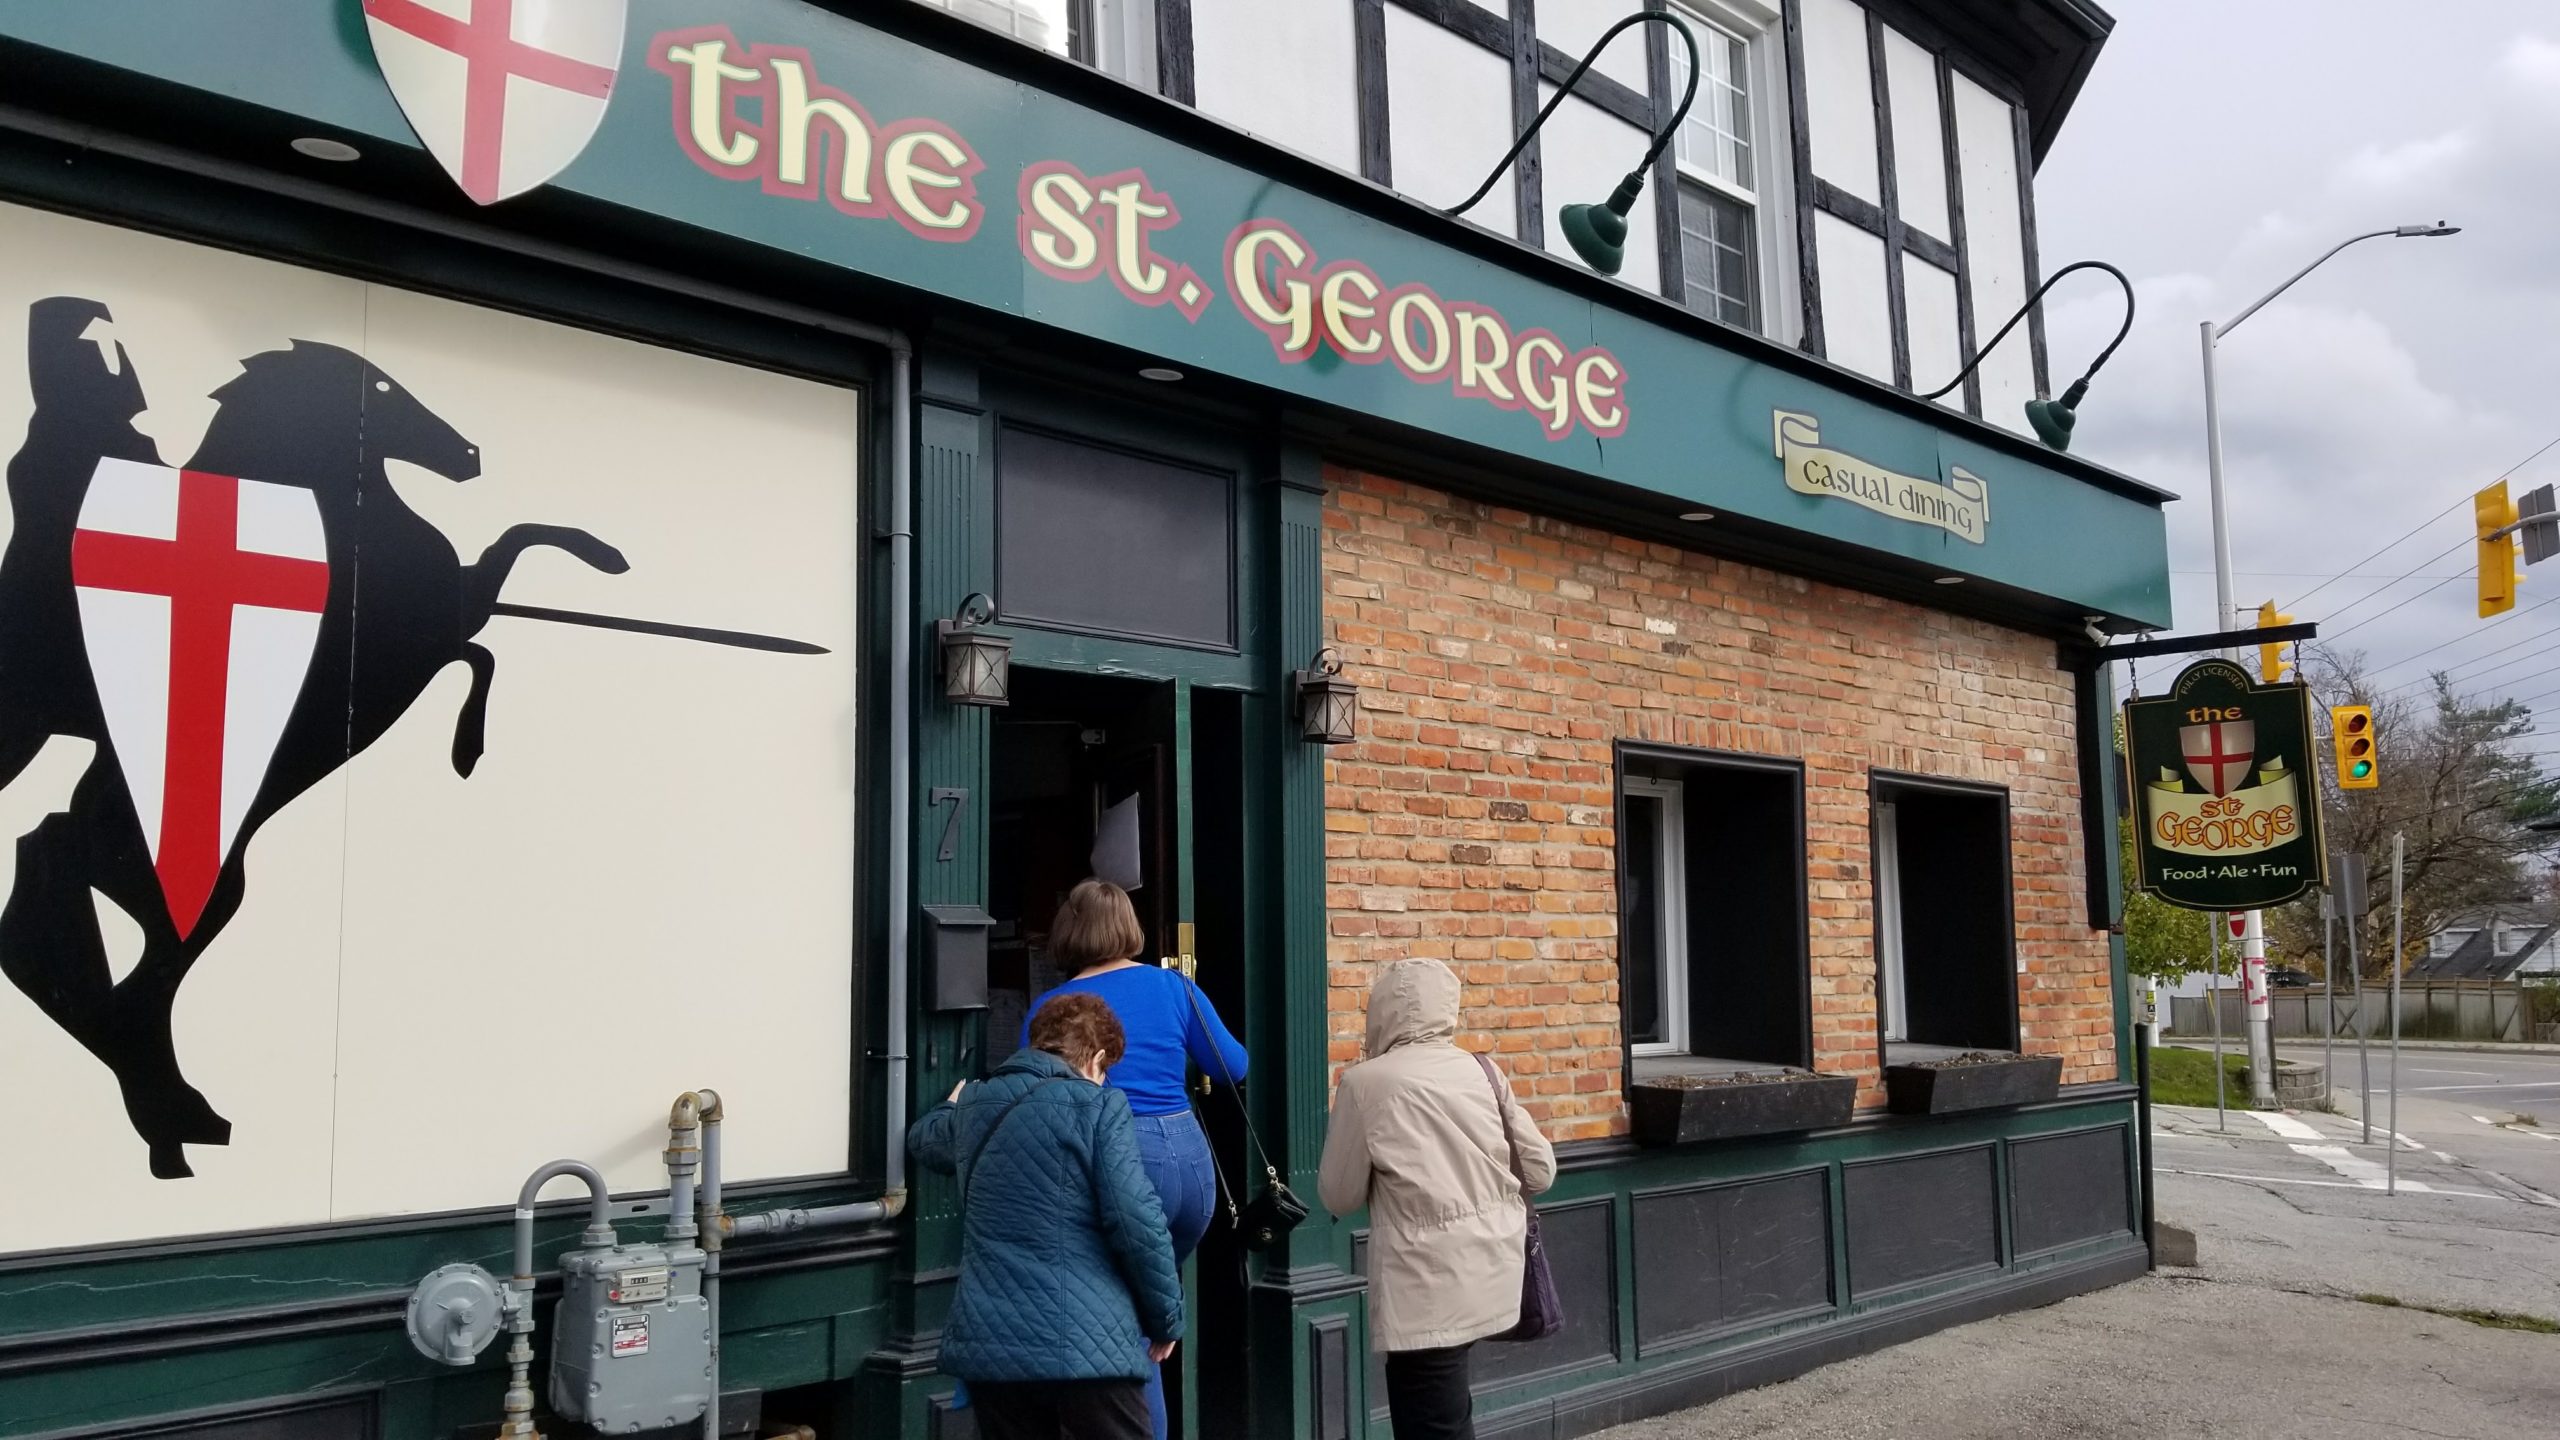 St George Pub